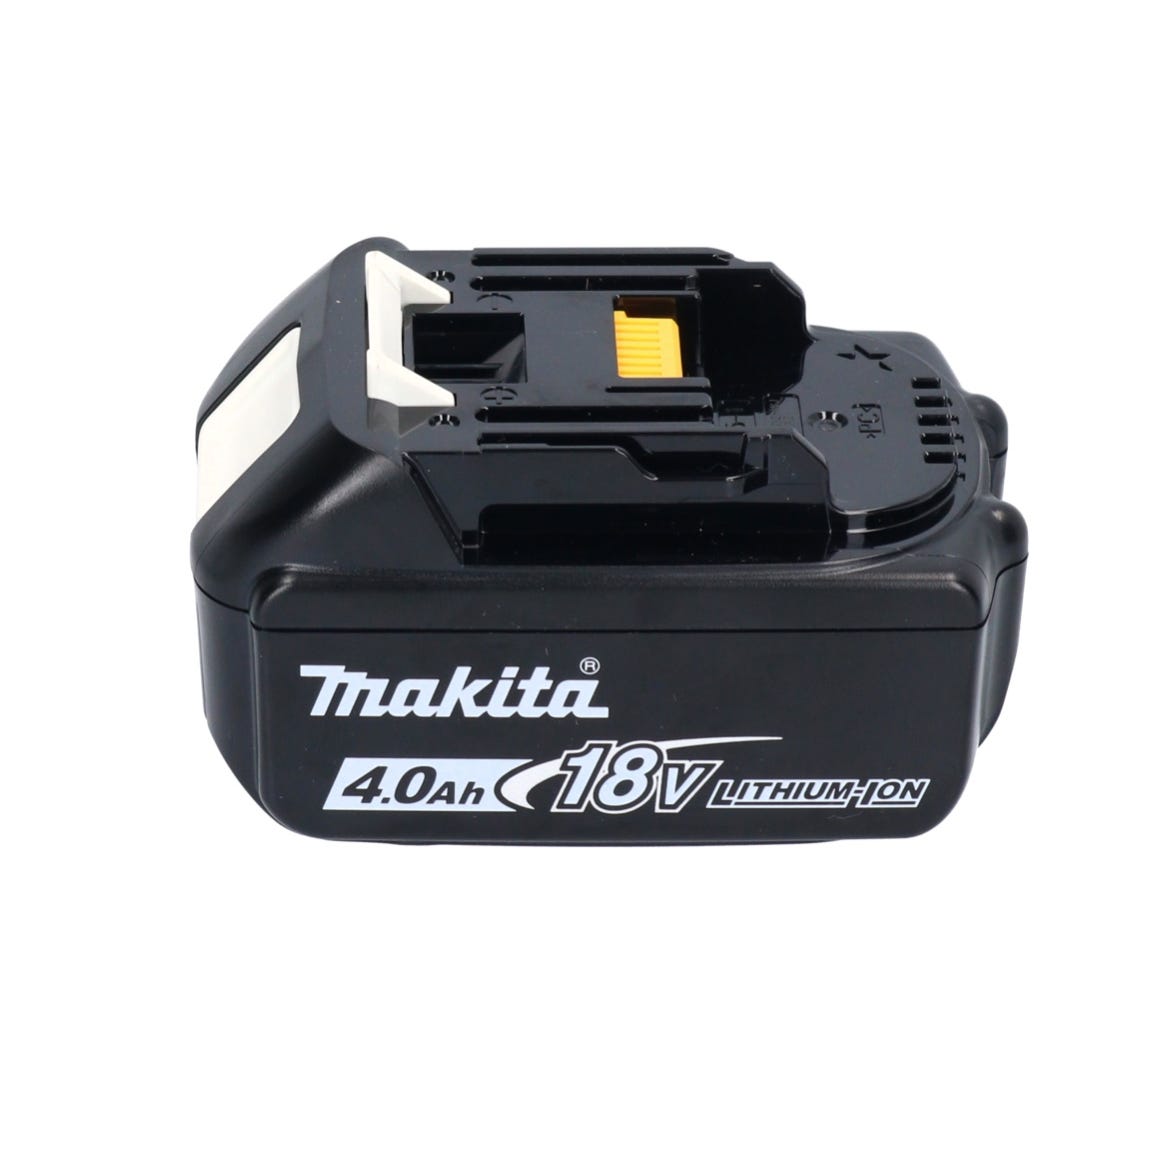 Makita DCF 203 M1 Ventilateur sans fil 14,4 V - 18 V + 1x batterie 4,0 Ah - sans chargeur 2